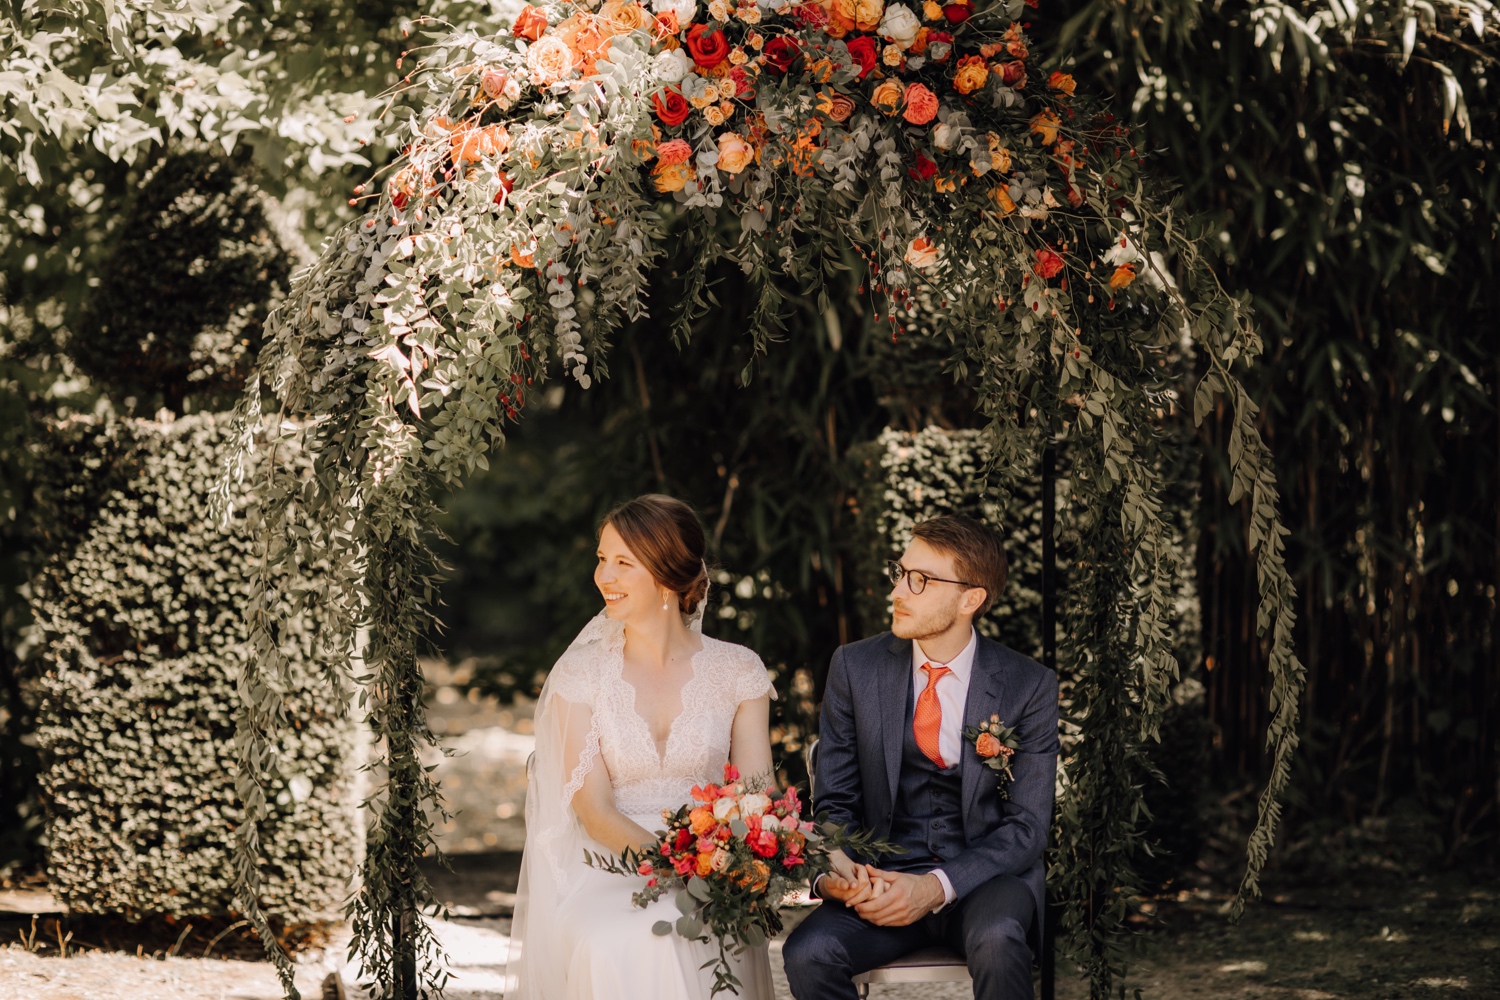 Huwelijksfotograaf Limburg - bruidspaar zit onder bloemenboog tijdens ceremonie